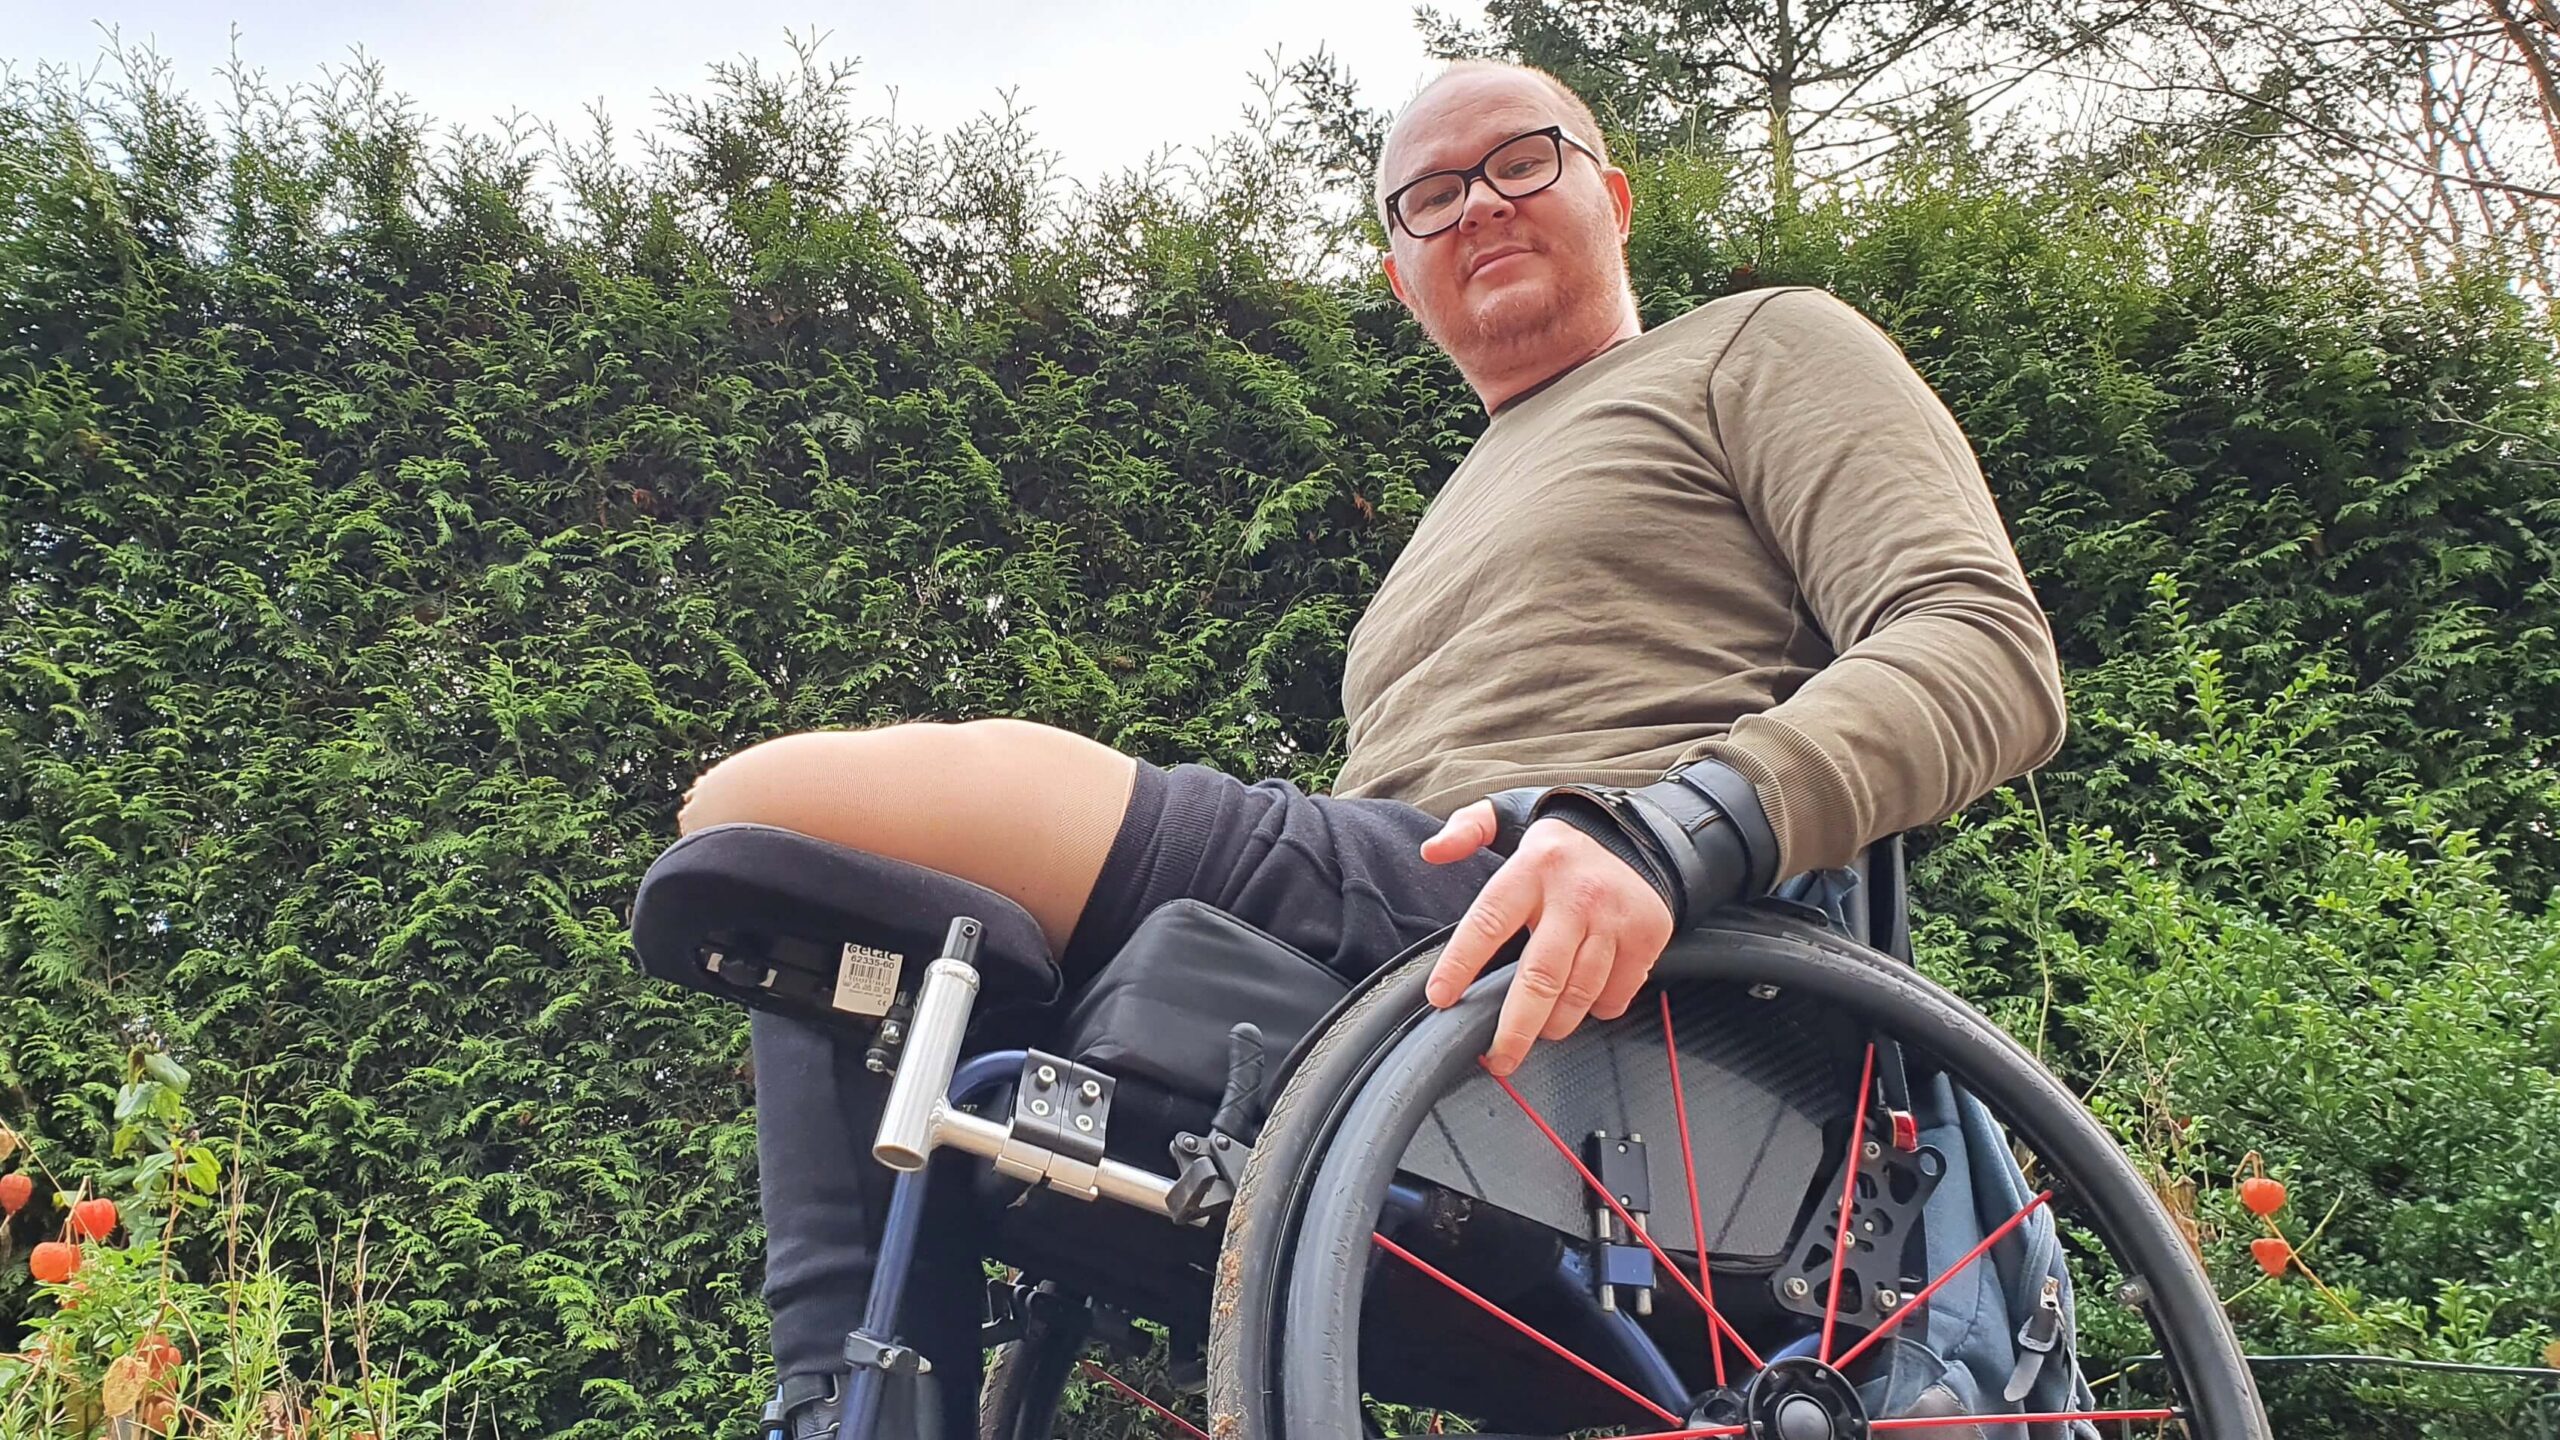 afbeelding van RaGaSto in een rolstoel met daarop een stompsteun waarop hij zijn stomp in een stompkous legt ter voorkoming van een contractuur of dwangstand na amputatie van zijn linker been